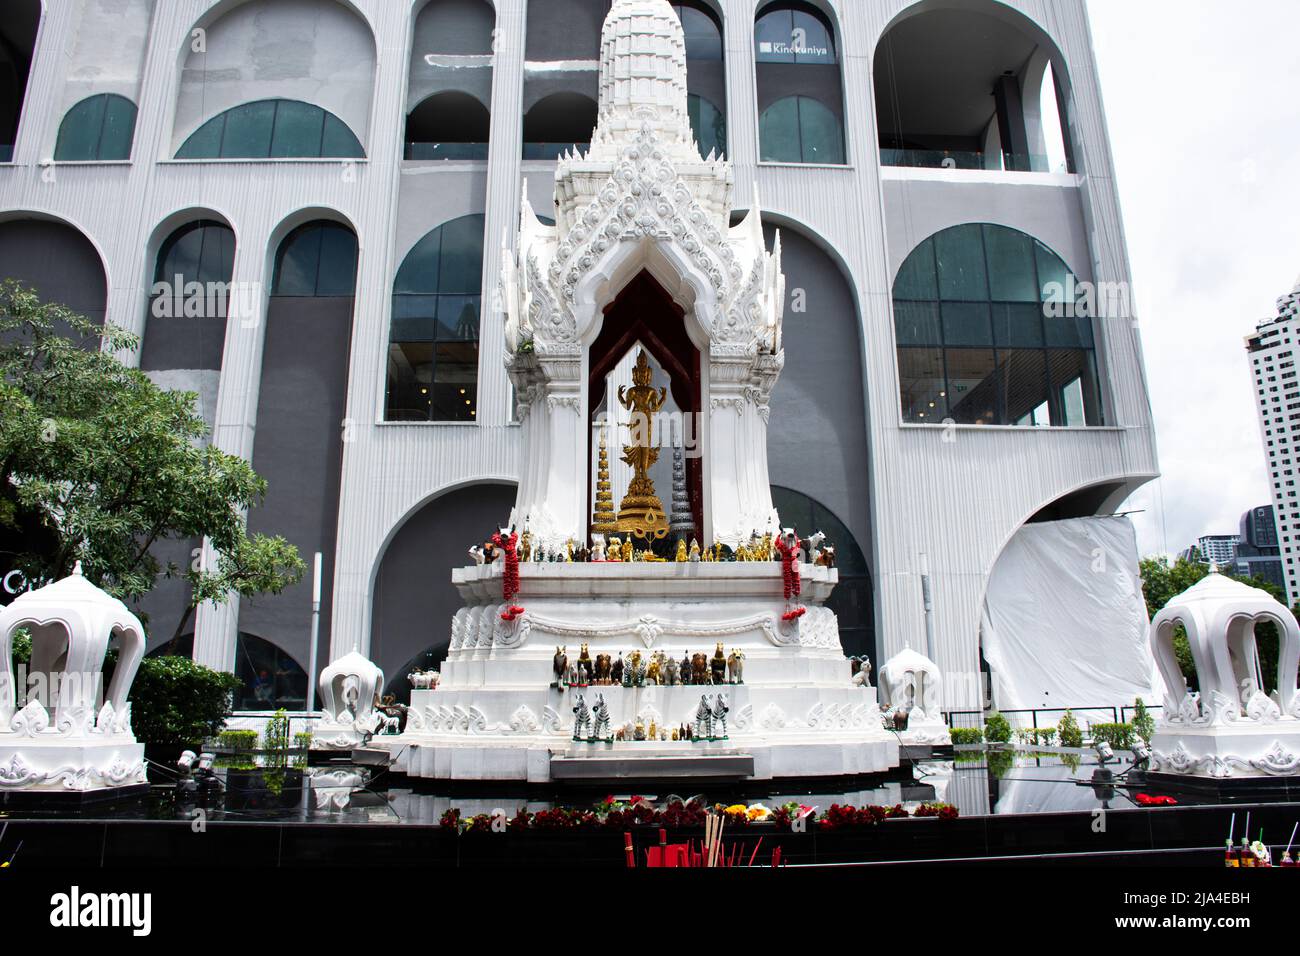 Alte trimurti gott-Statue oder lord Supreme trinity Figur in Schrein für thailänder Reisende reisen Besuch und respektieren Segen heilig auf der Terrasse beten Stockfoto